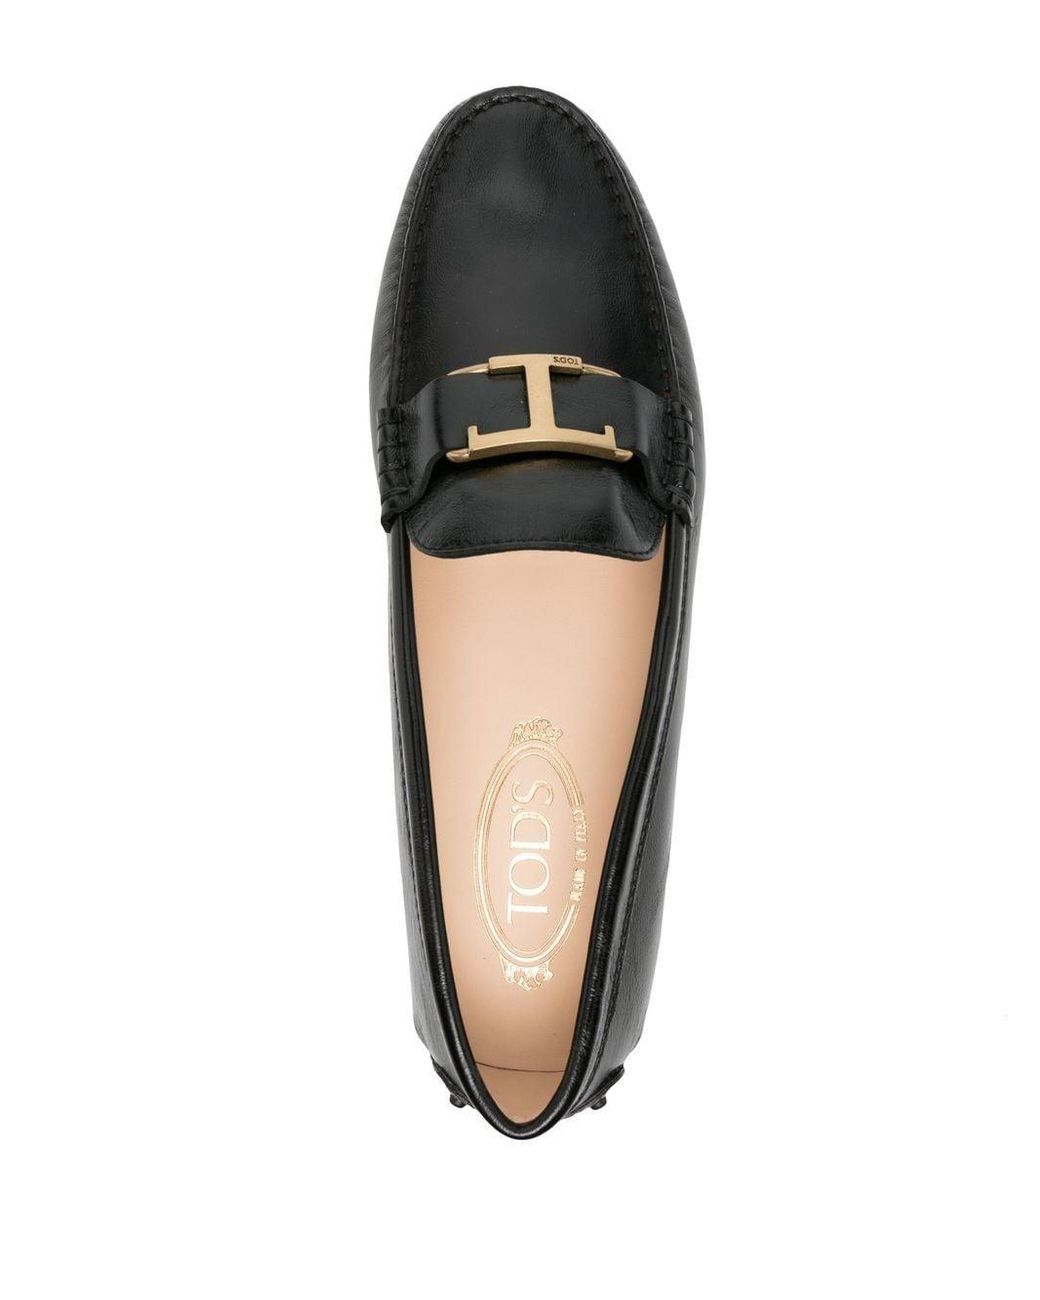 Mujer Zapatos de Zapatos planos Bailarinas con placa del logo Hogan de Cuero de color Negro sandalias y chanclas de Bailarinas 